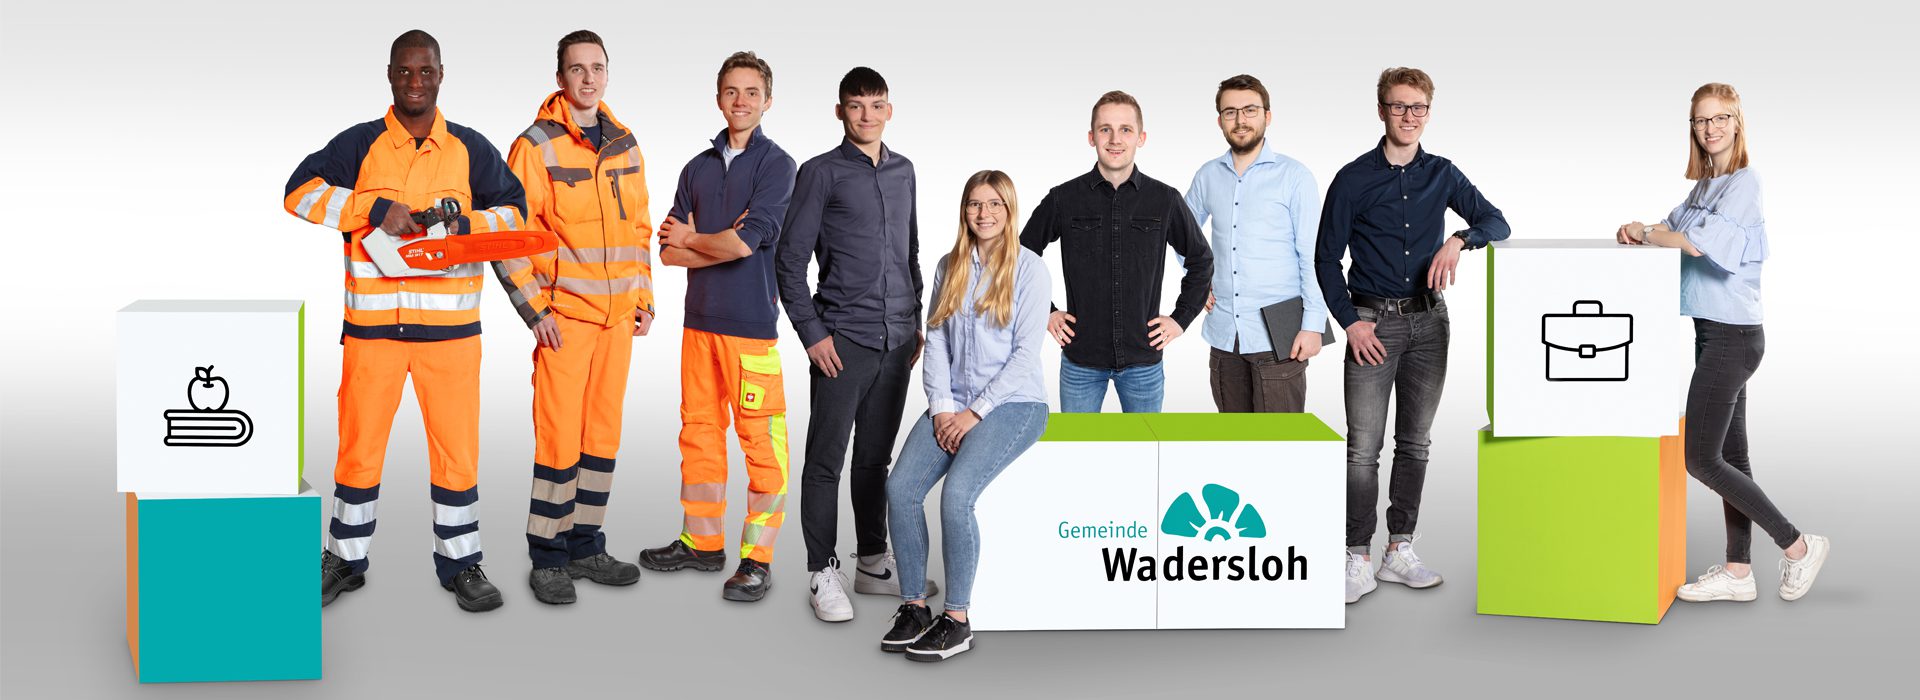 Header_Gemeinde_Wadersloh